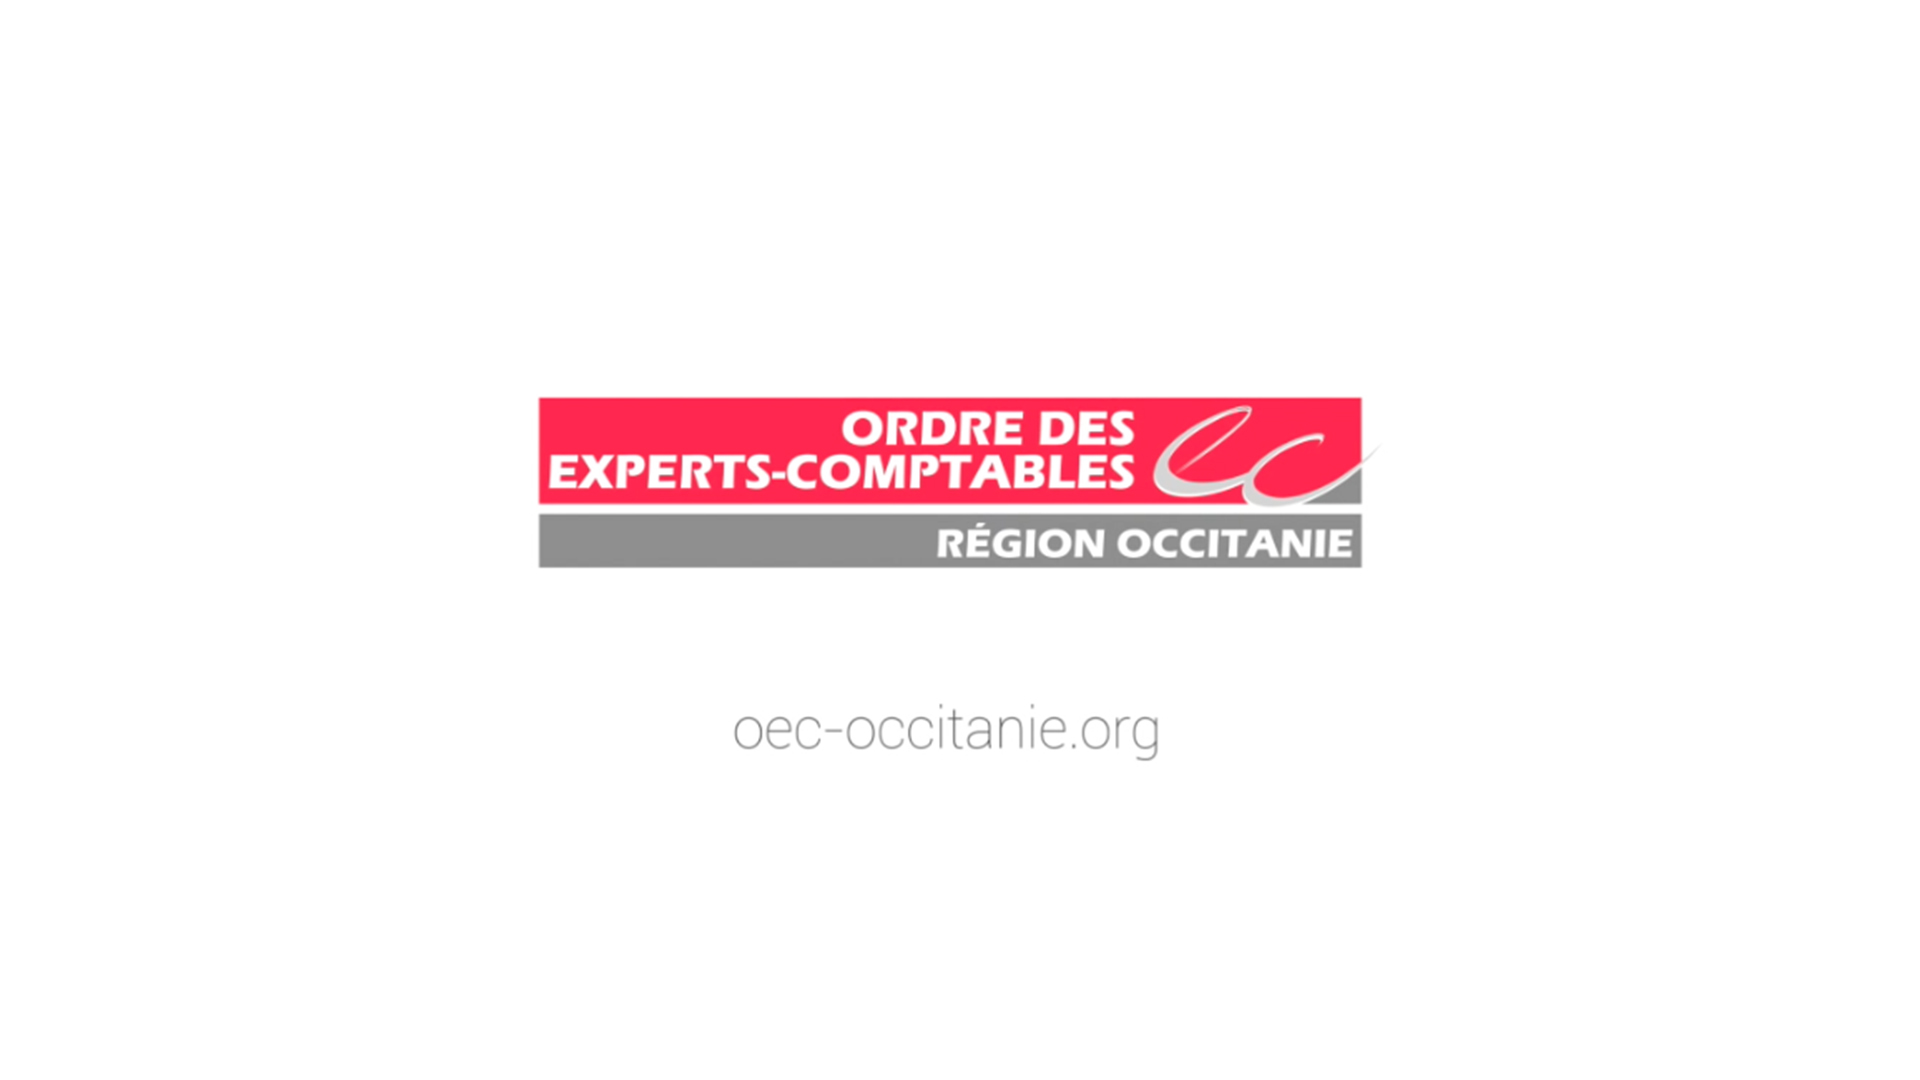 ORDRE DES EXPERTS-COMPTABLES D’OCCITANIE